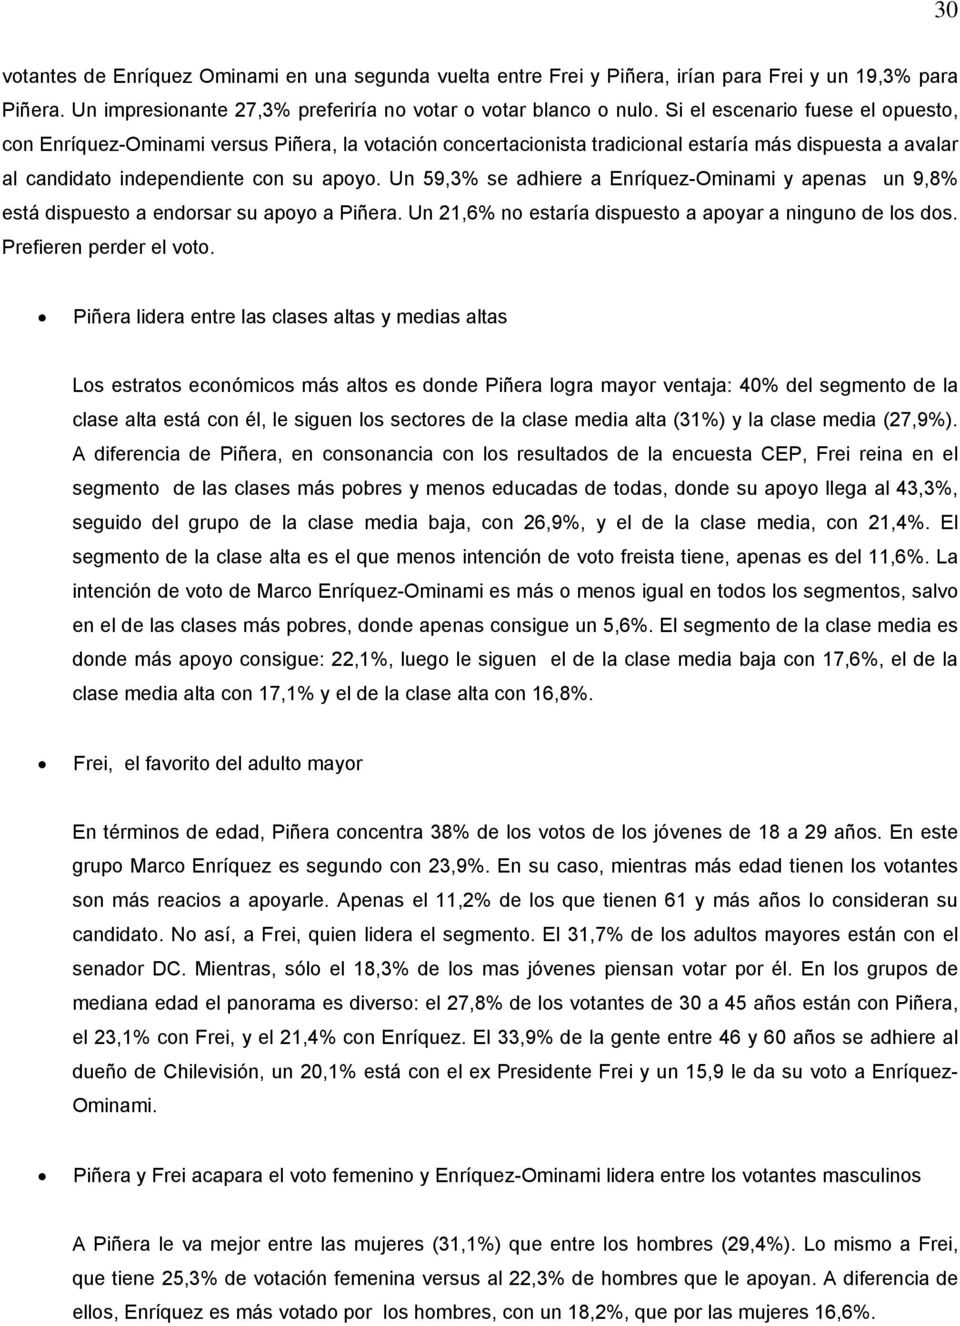 Un 59,3% se adhiere a Enríquez-Ominami y apenas un 9,8% está dispuesto a endorsar su apoyo a Piñera. Un 21,6% no estaría dispuesto a apoyar a ninguno de los dos. Prefieren perder el voto.